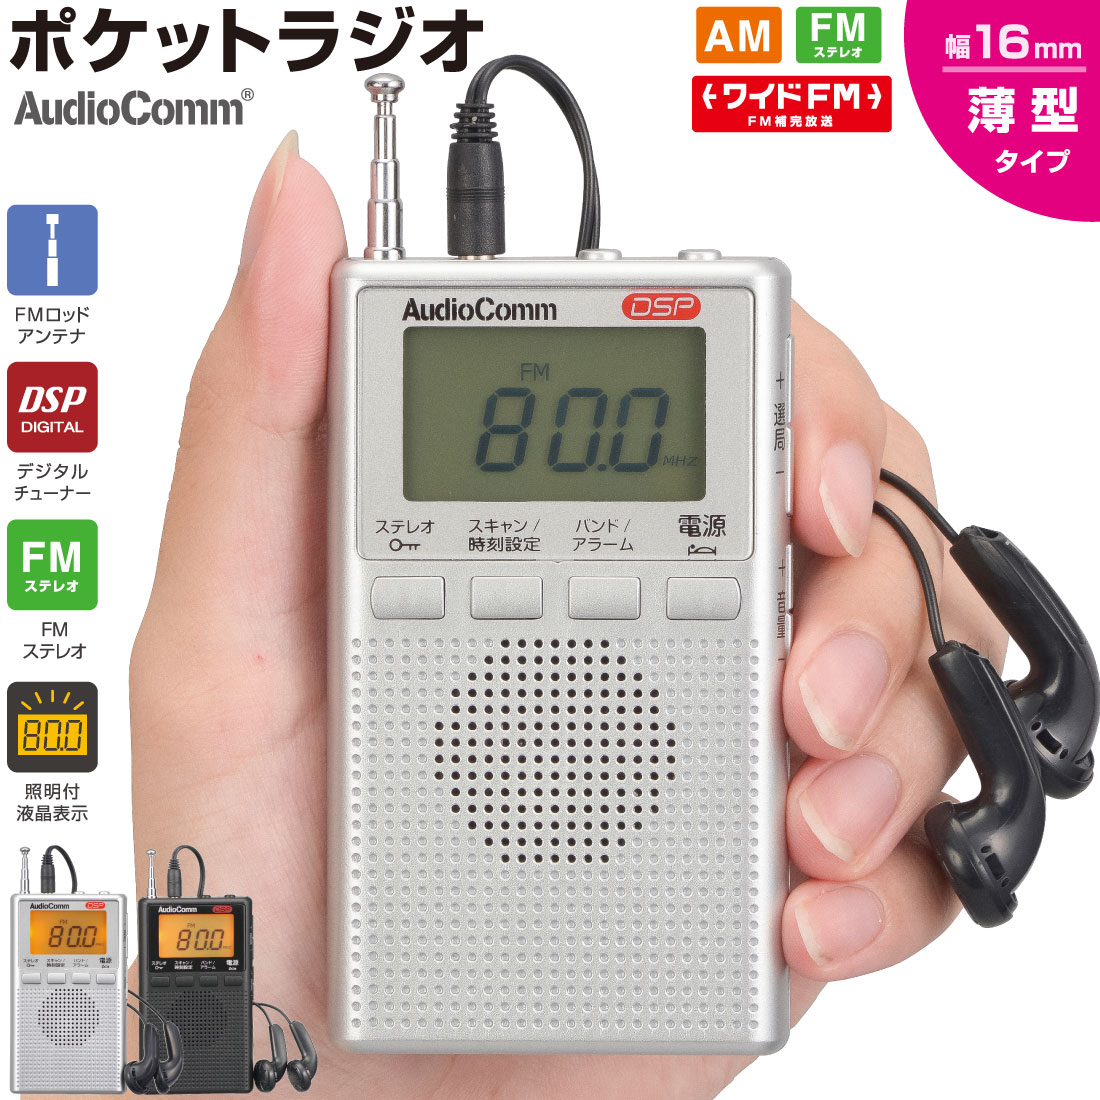 ラジオ 小型 デジタル DSPポケットラジオ AM/FMステレオ シルバー｜RAD-P300S-S 03-0977 AudioComm オーム電機 1